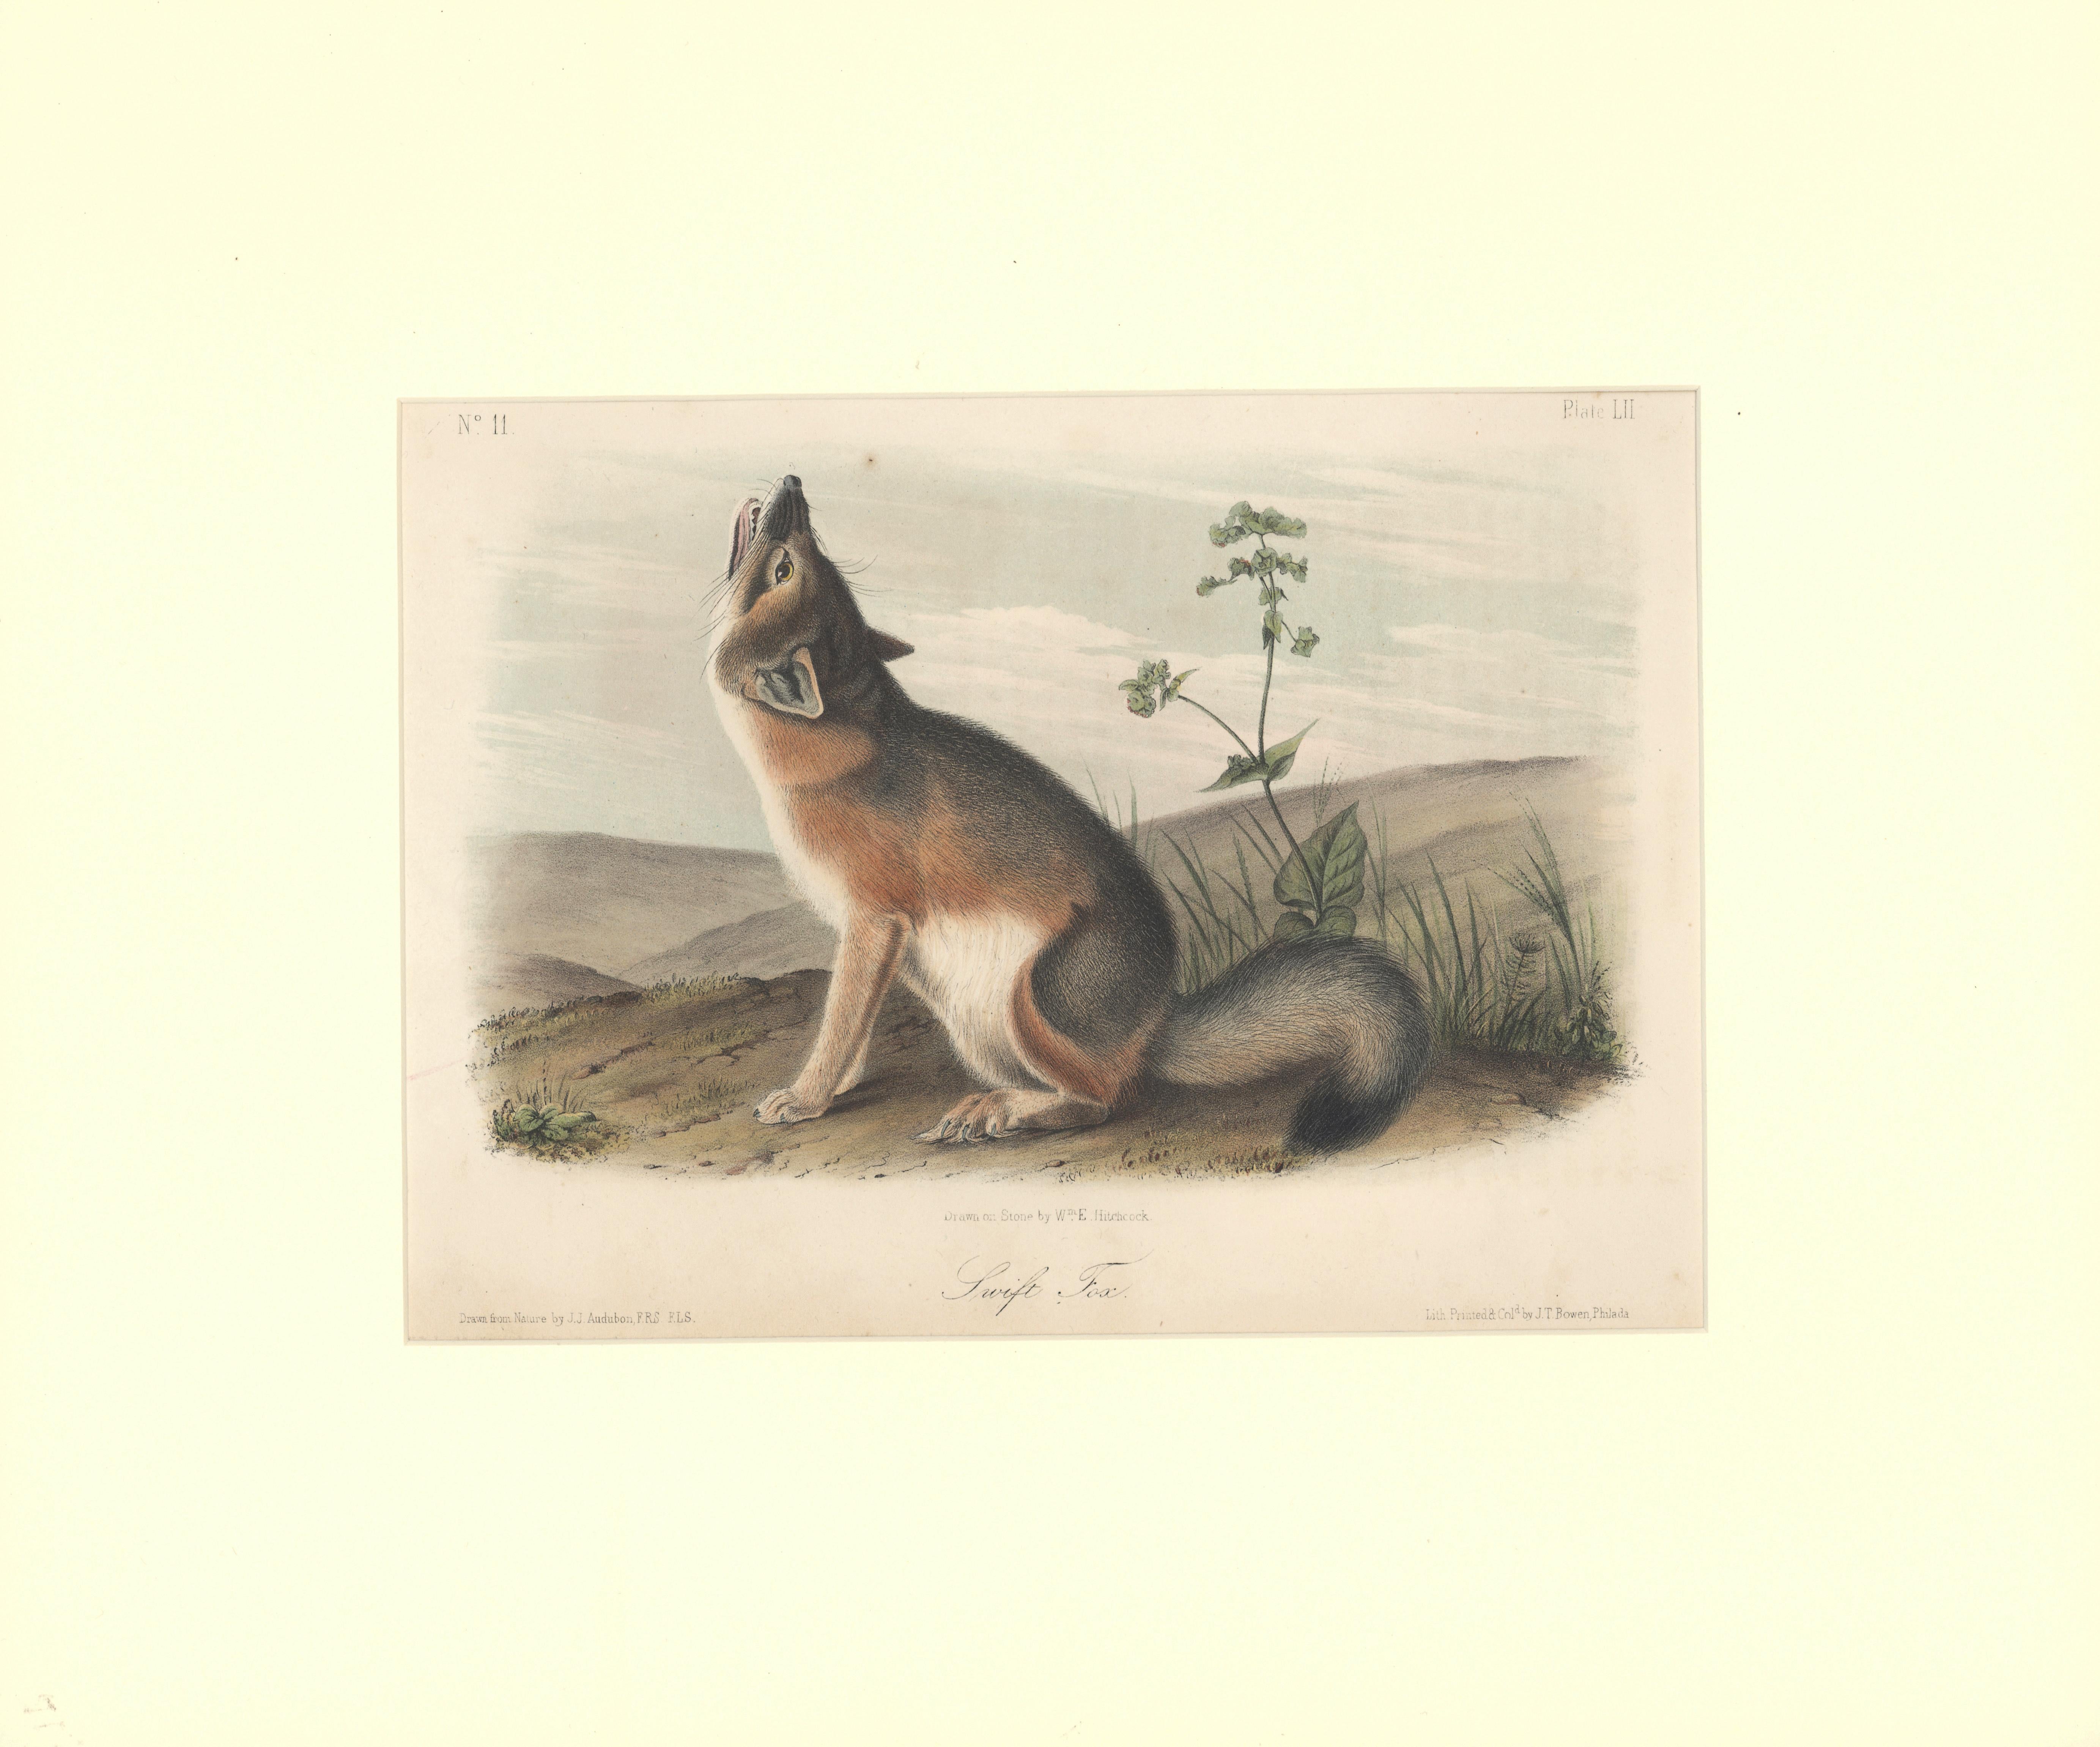 John Woodhouse Audubon Animal Print - Swift Fox by Audubon 